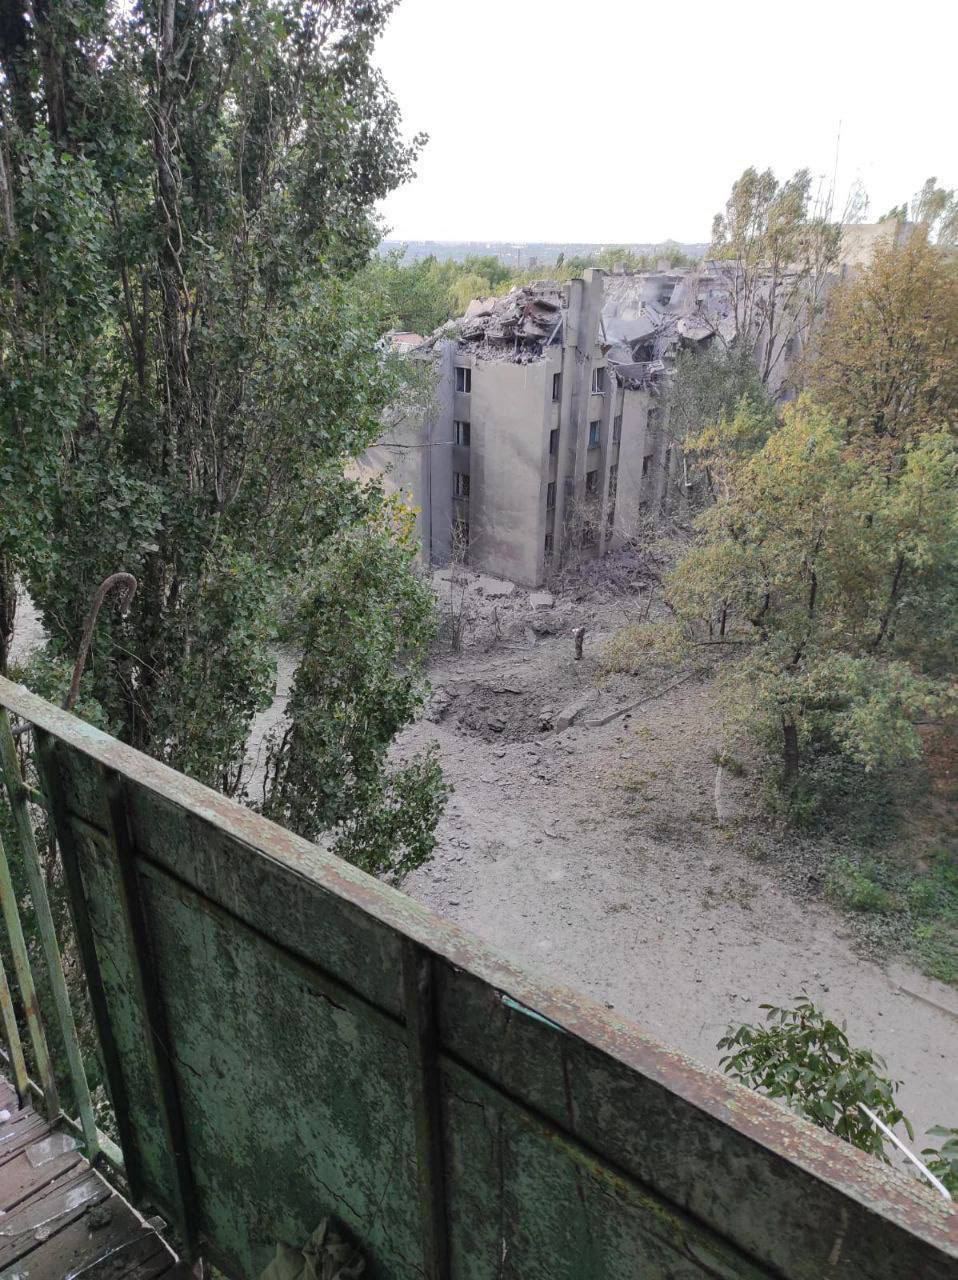 ВСУ уничтожили базу оккупантов во временно оккупированной Кадиевке (Стаханов) Луганской области